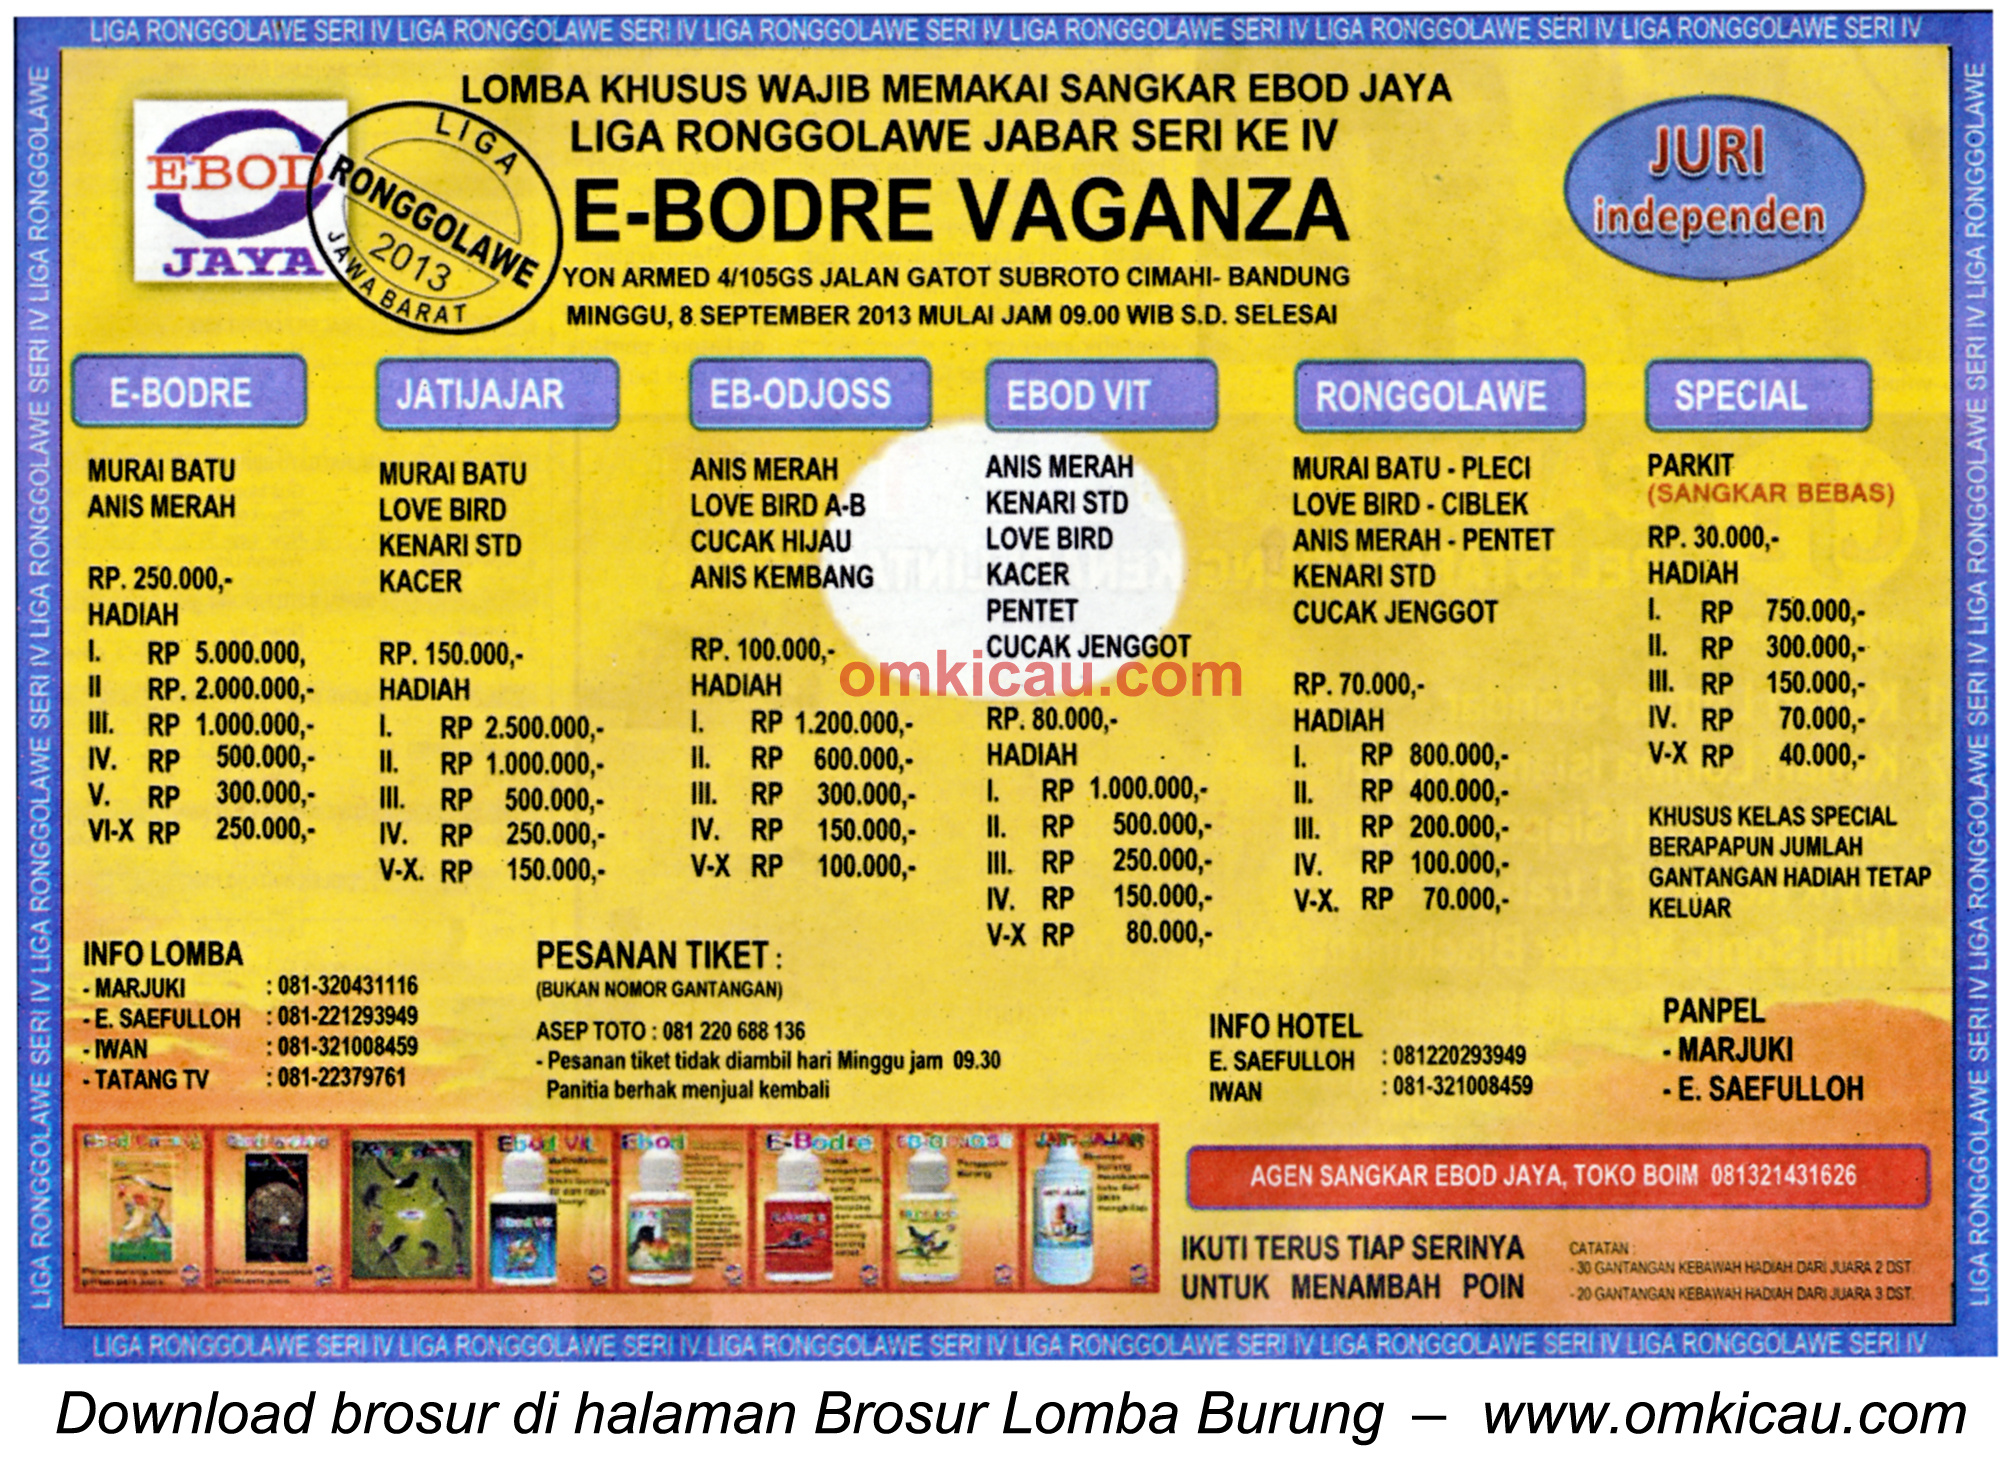 Brosur Lomba Burung E-Bodre Vaganza Bandung 8 Sept 2013